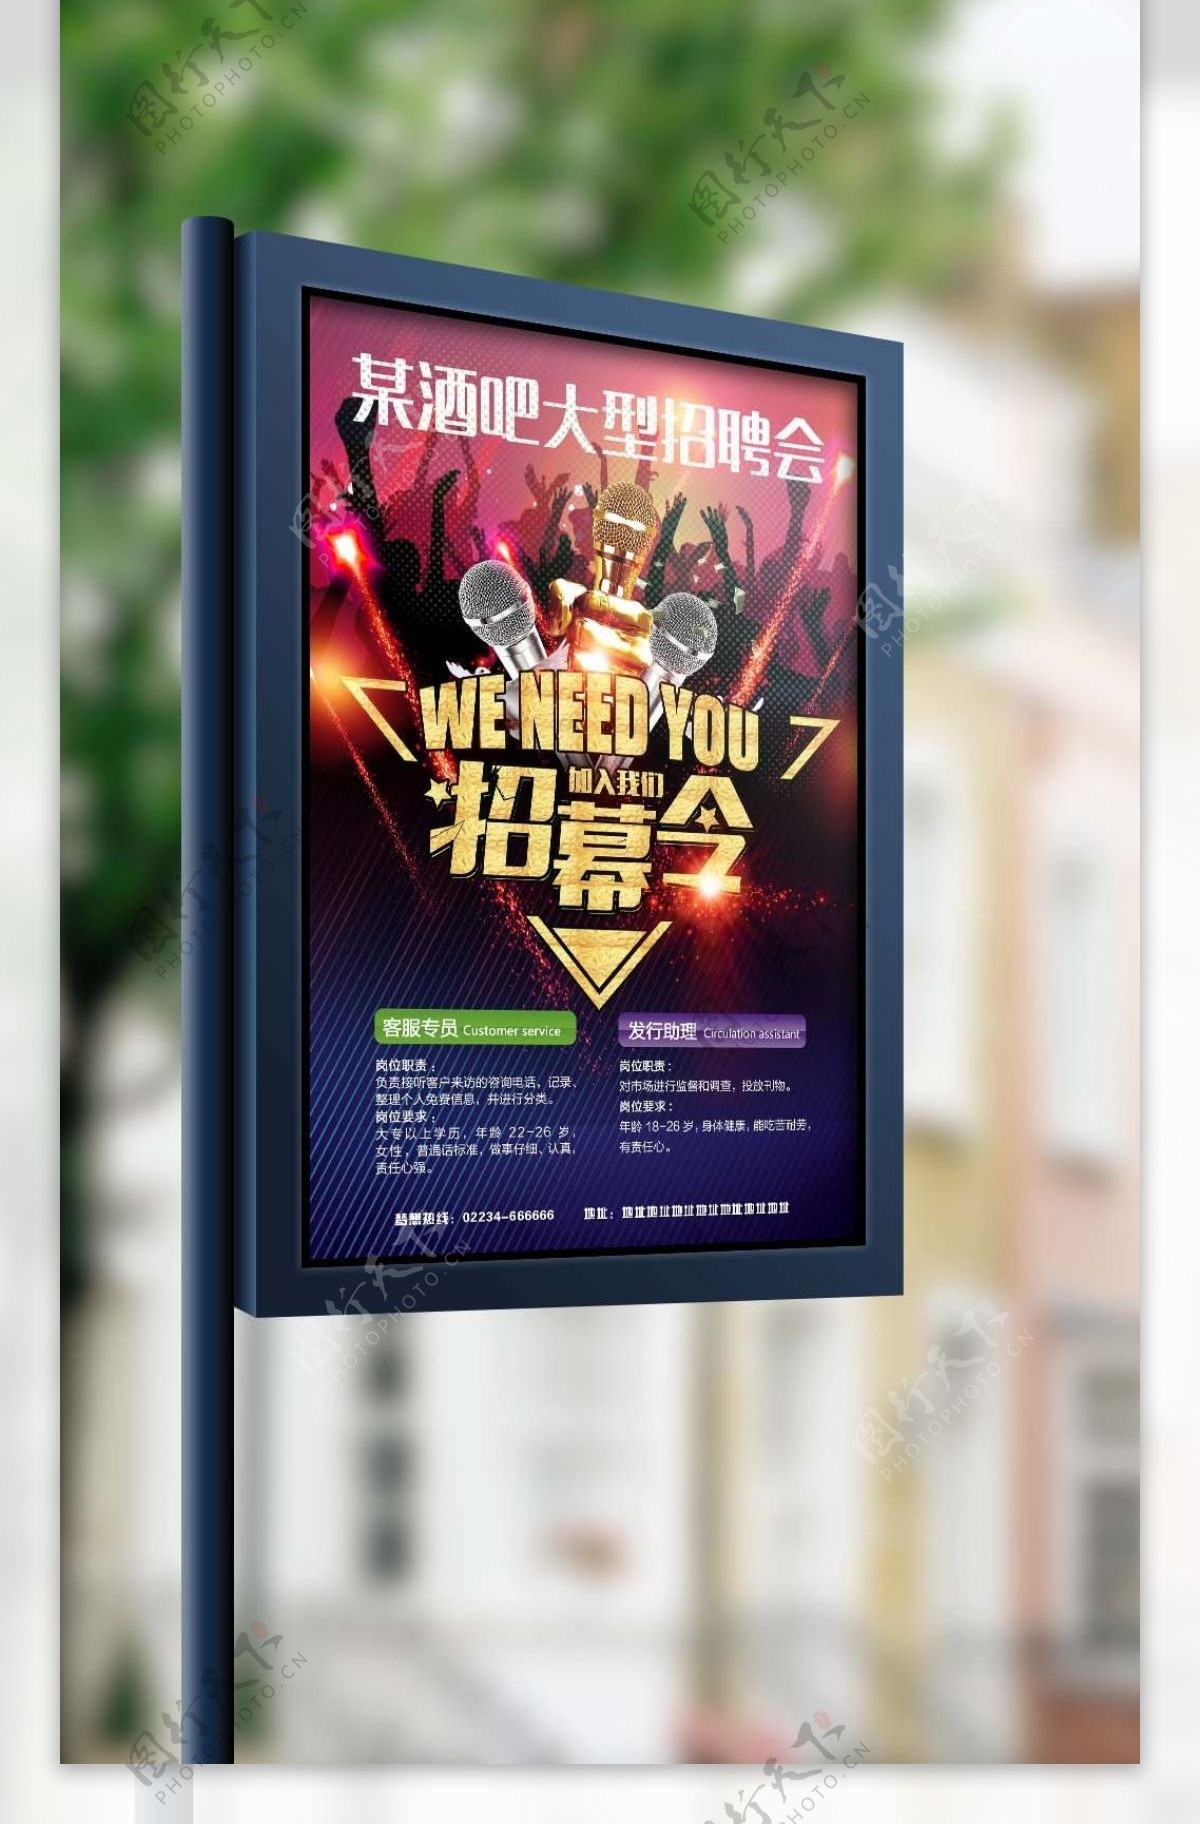 2017年炫彩酒吧招聘海报设计